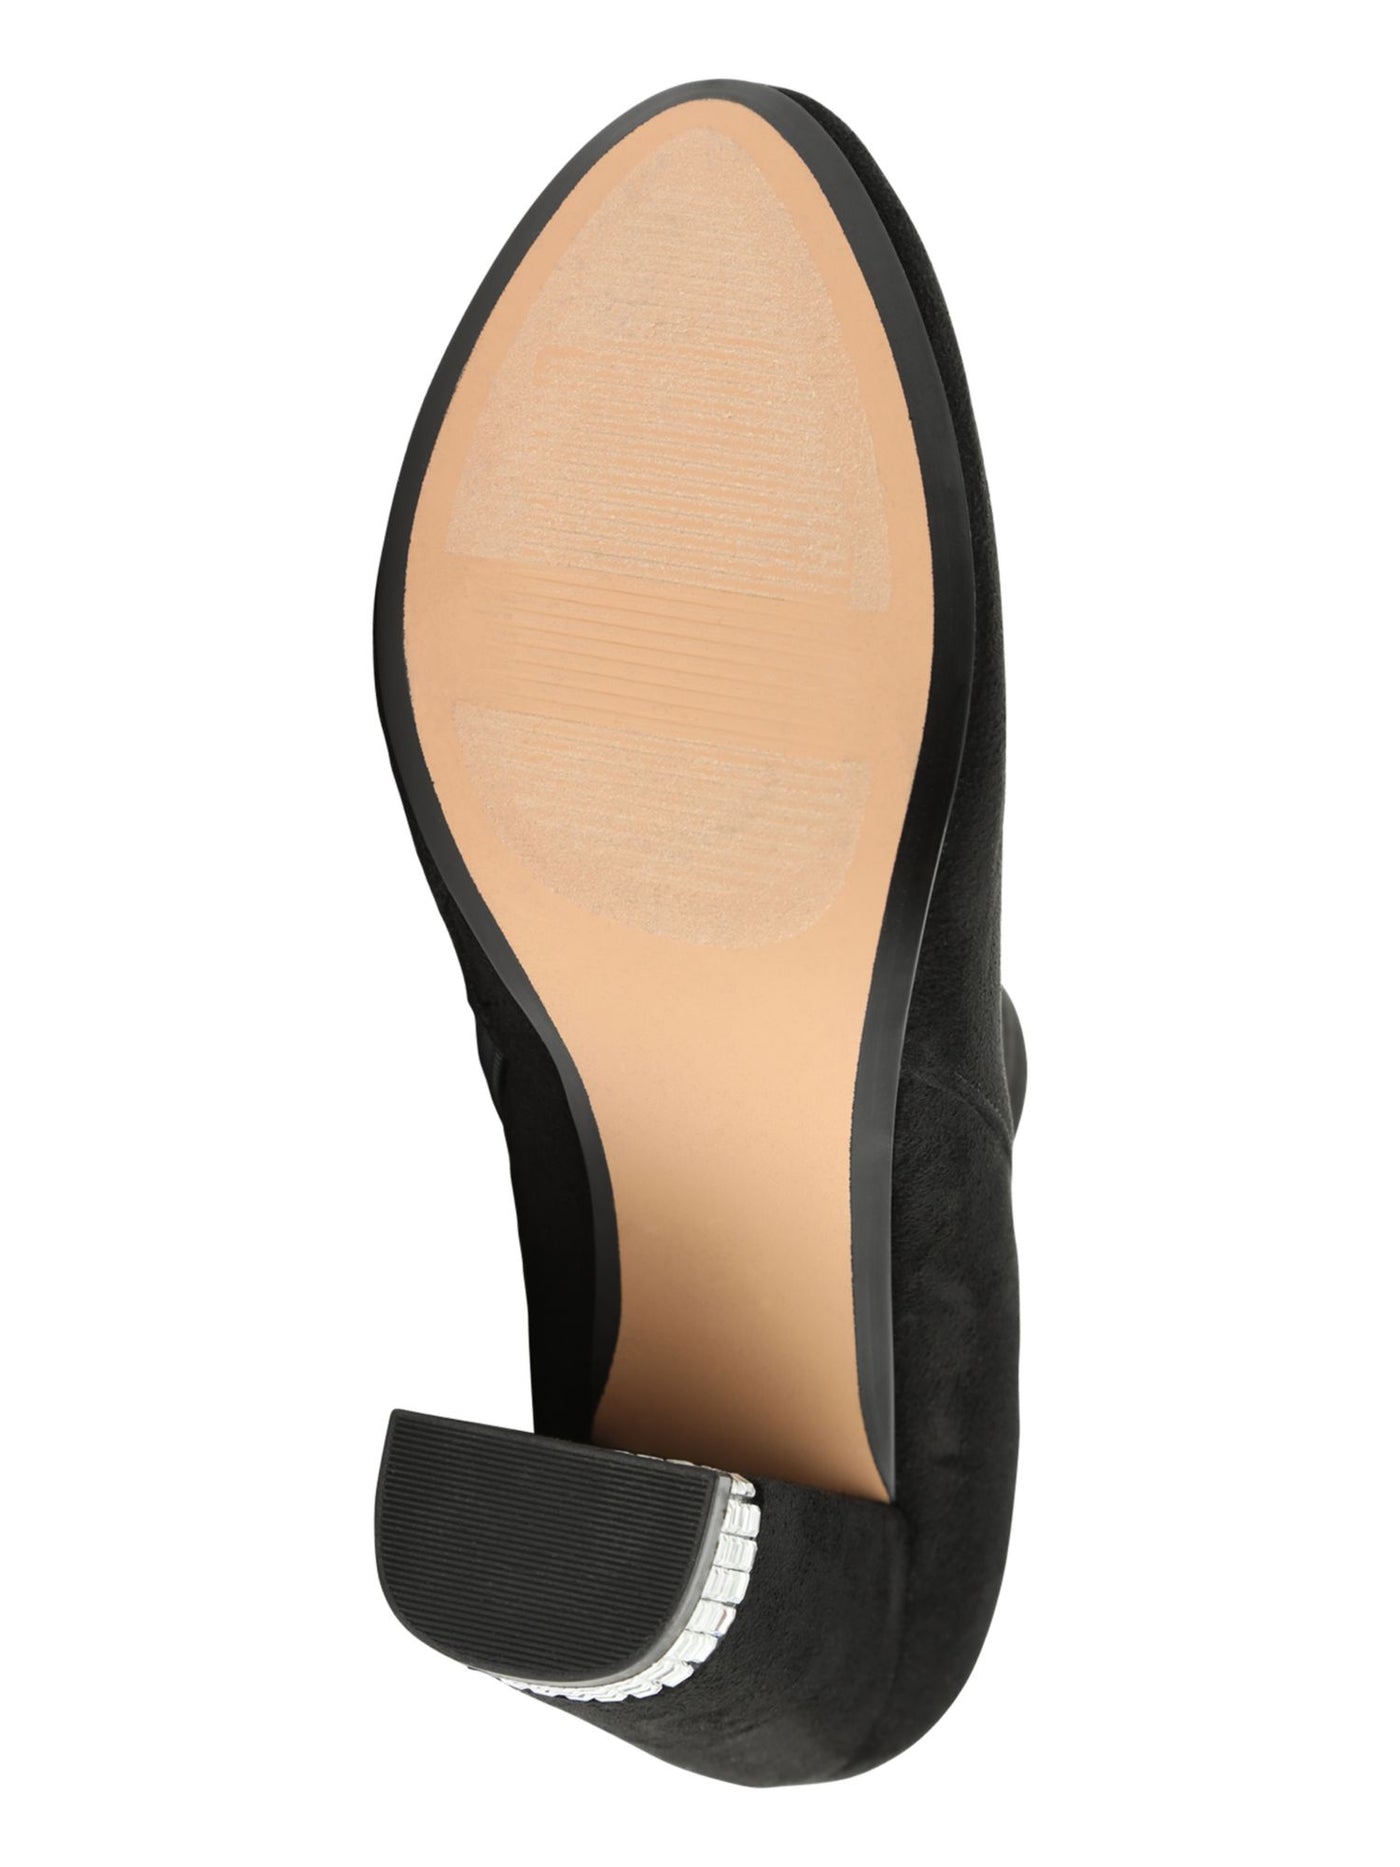 XOXO Womens Black Rhinestone Heel Comfort Yardria Round Toe Block Heel Zip-Up Boots Shoes M